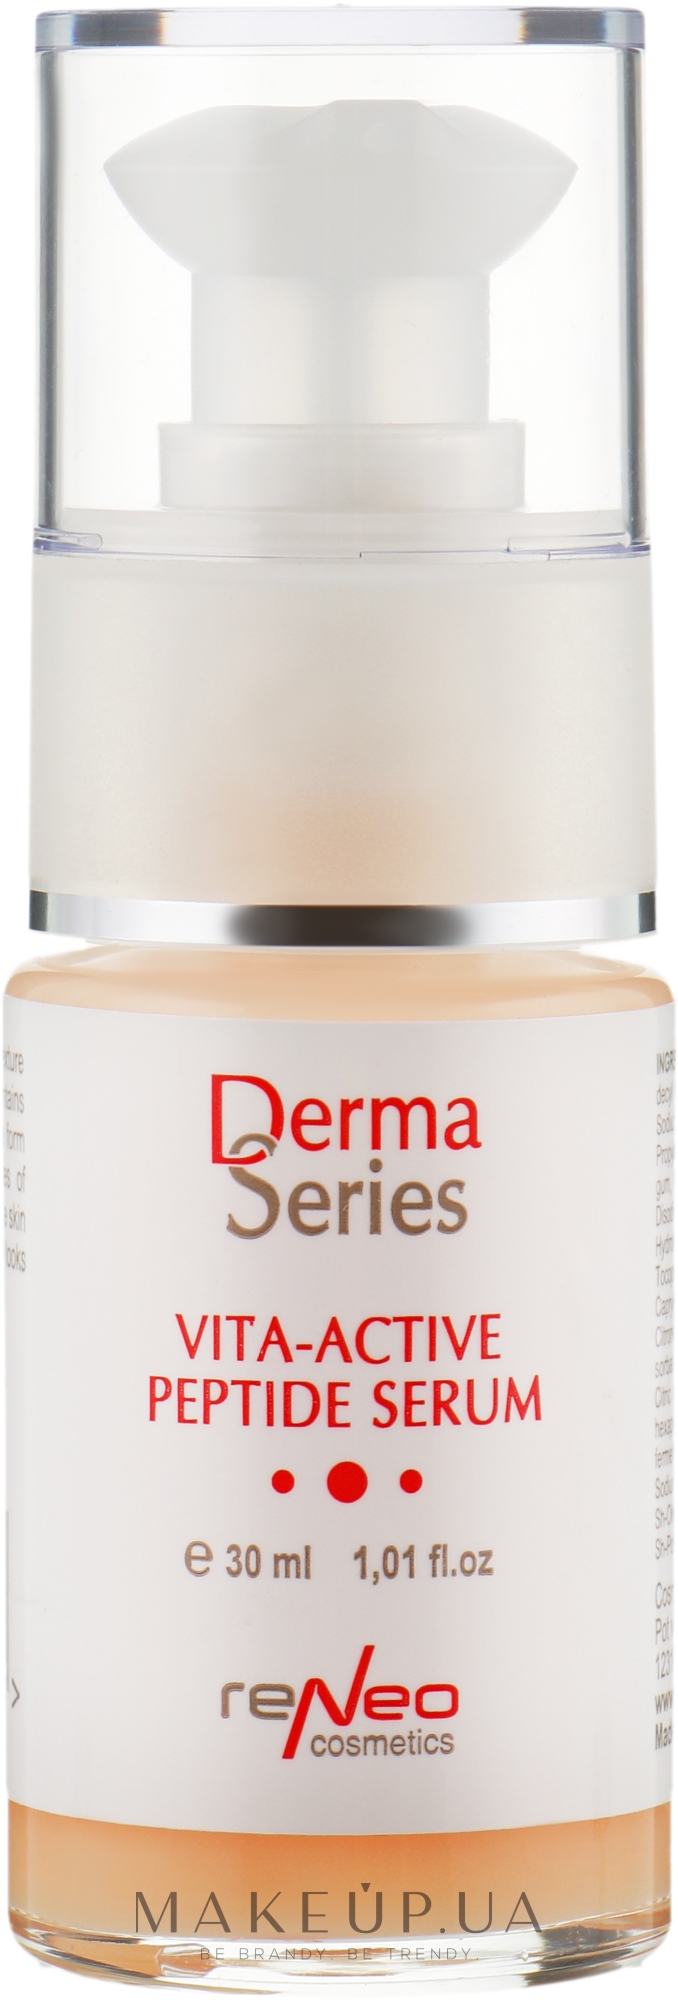 Вітамінізована пептидна сироватка - Derma Series Vita-Active Peptide Serum — фото 30ml